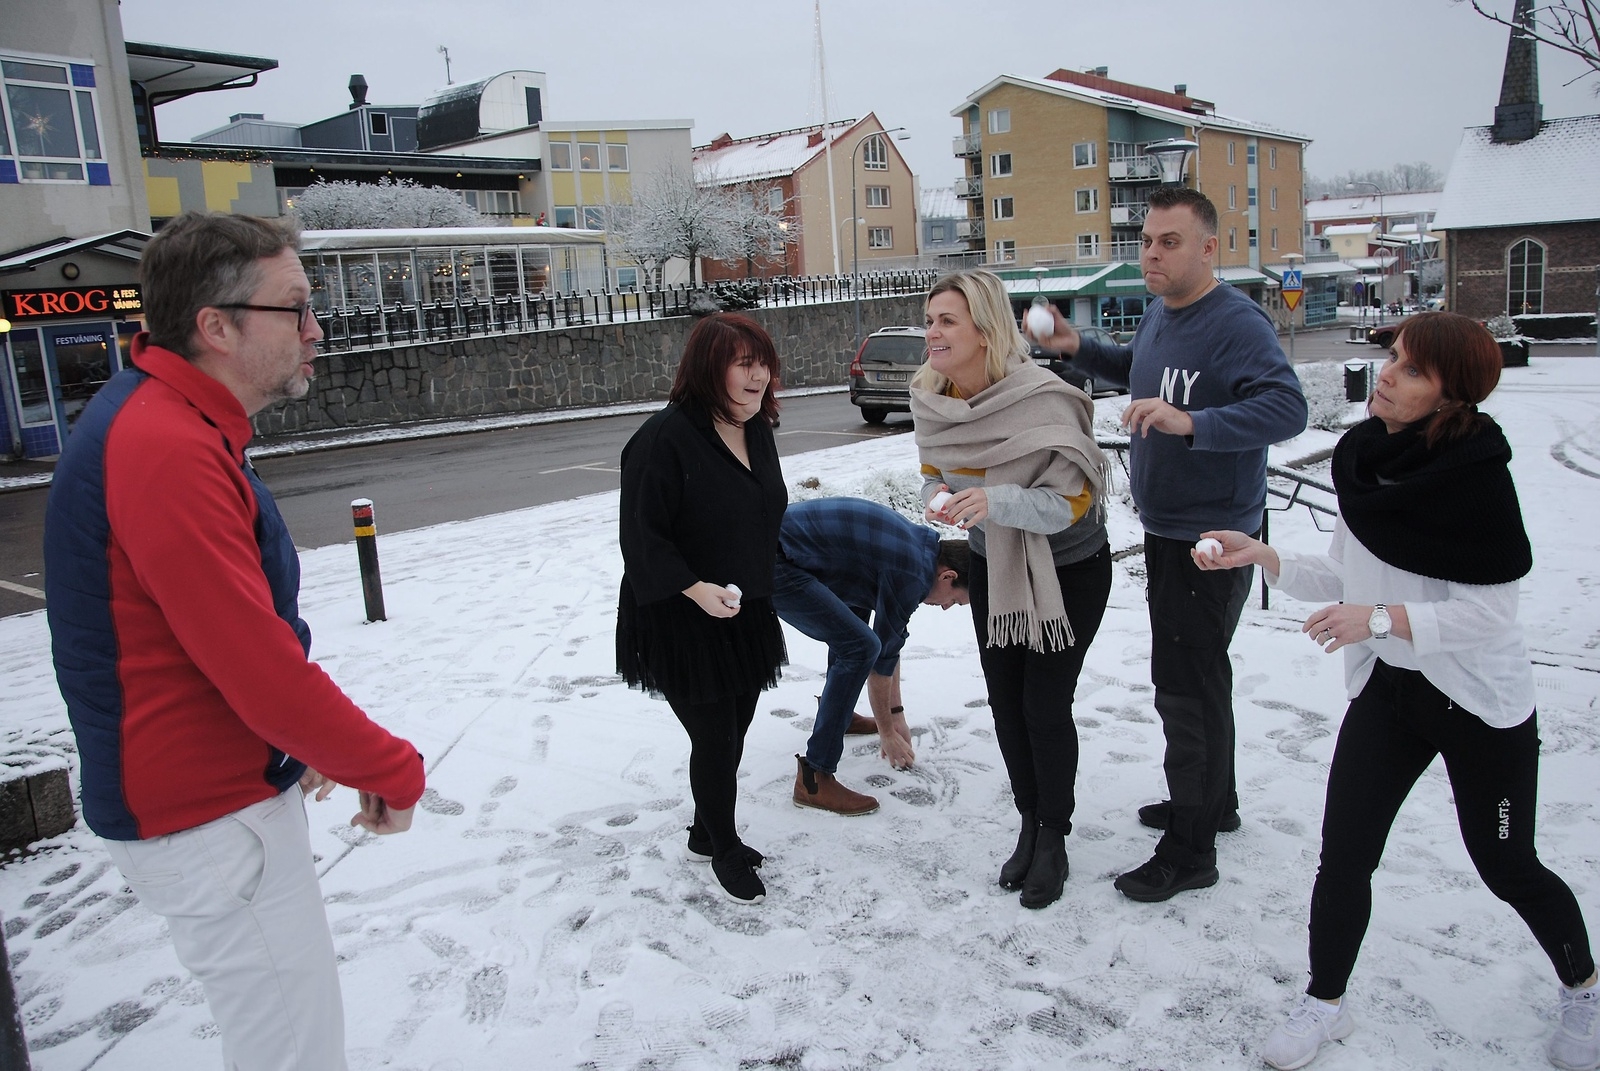 "Här får ni inte träffa", säger Jörgen Sjöberg och pekar när revygänget gör sig redo att attackera honom med snöbollar.